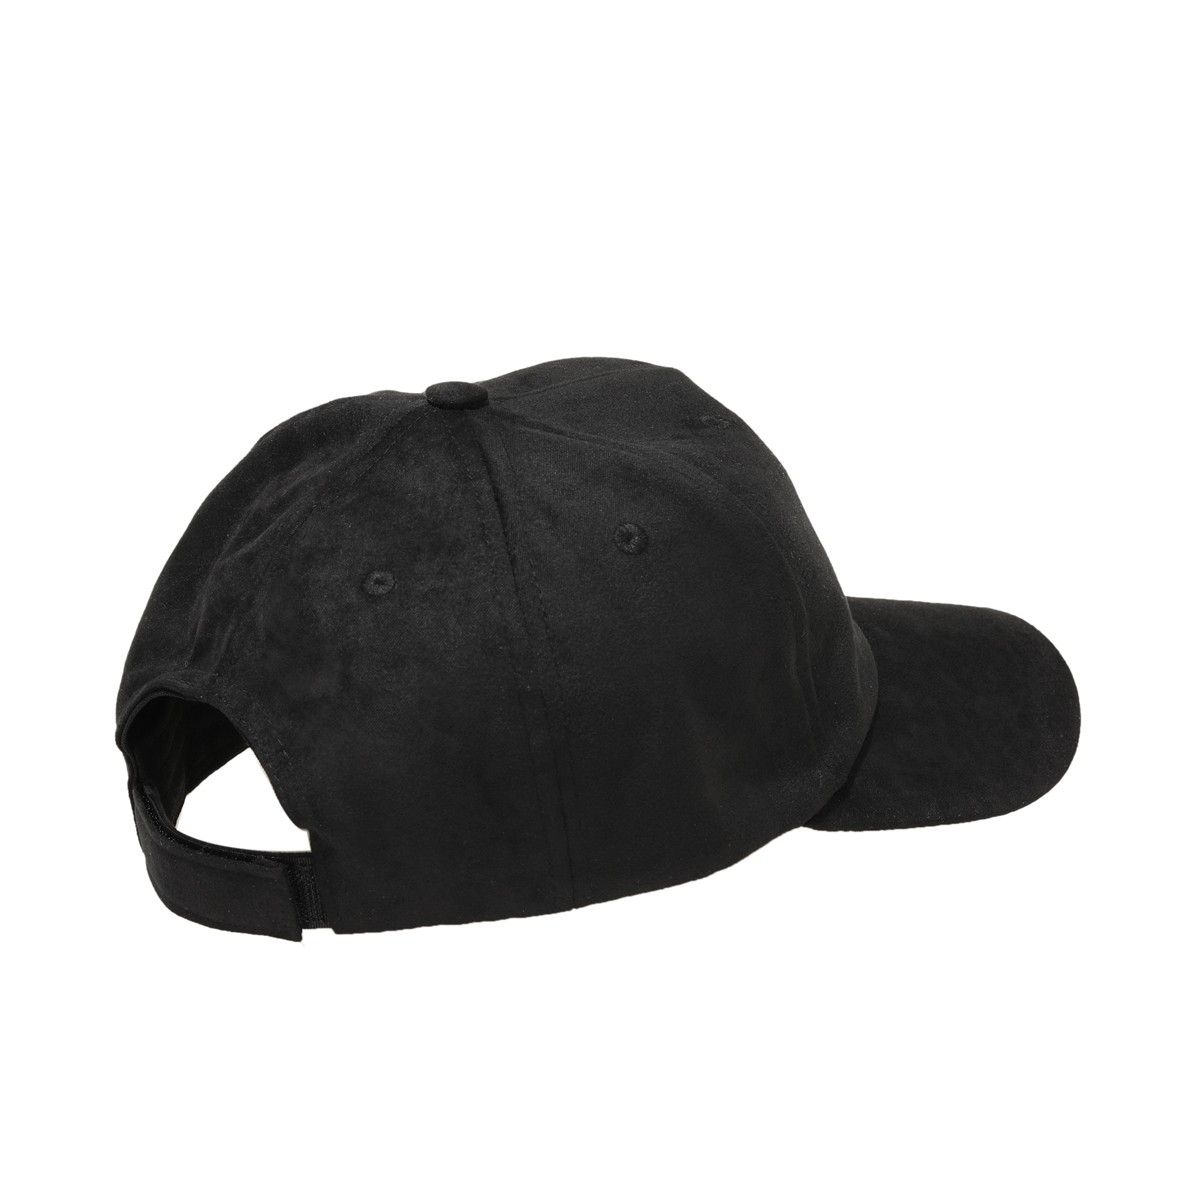 Flo SÜET LOS ANGELES ŞAPKA-M Siyah Erkek Şapka. 1